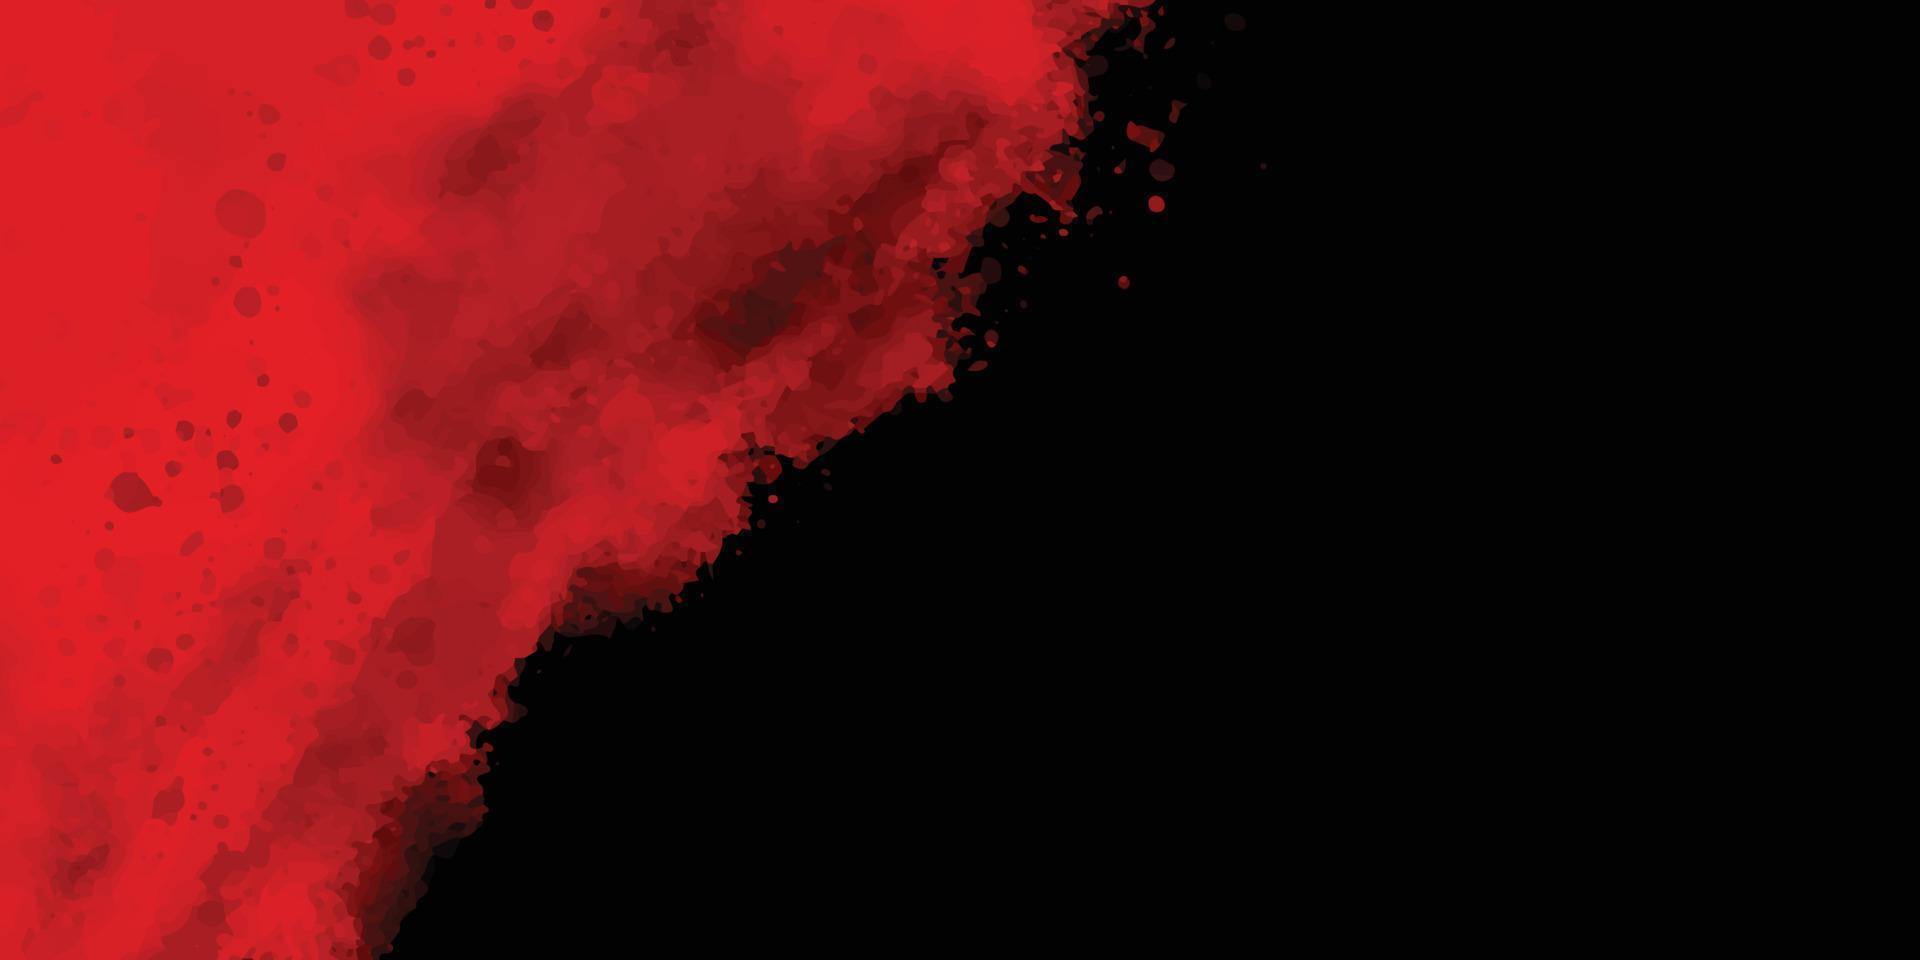 fond grunge rouge et noir avec un espace pour le texte, peinture de fond grunge rouge aquarelle abstraite, beau fond de texture rouge moderne et élégant avec de la fumée, vecteur, illustration vecteur